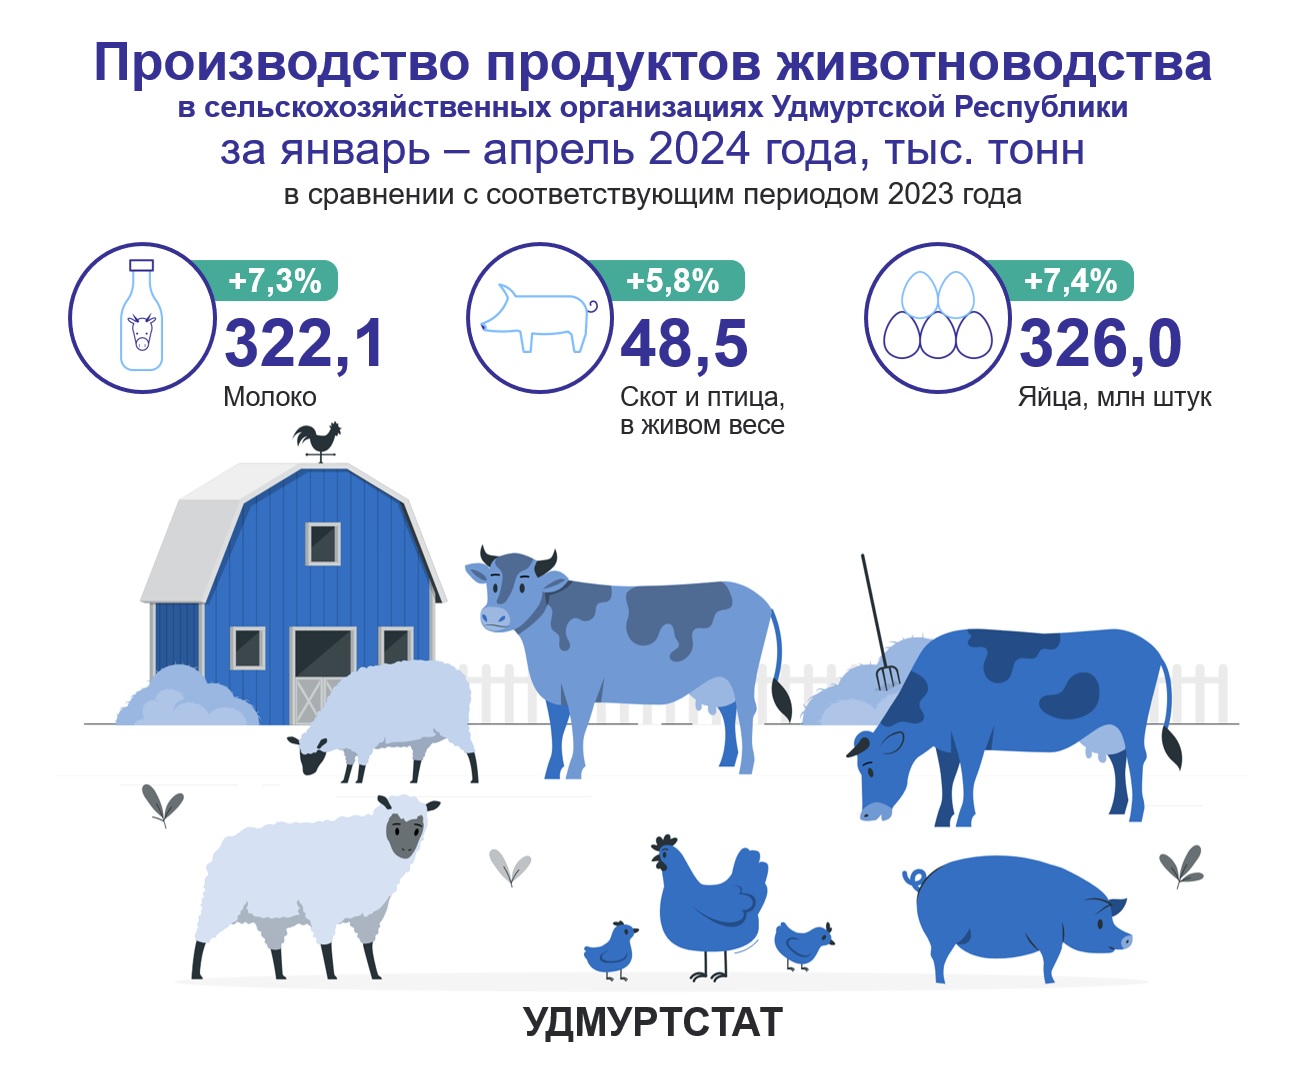 Производство продуктов животноводства за январь – апрель 2024 года.